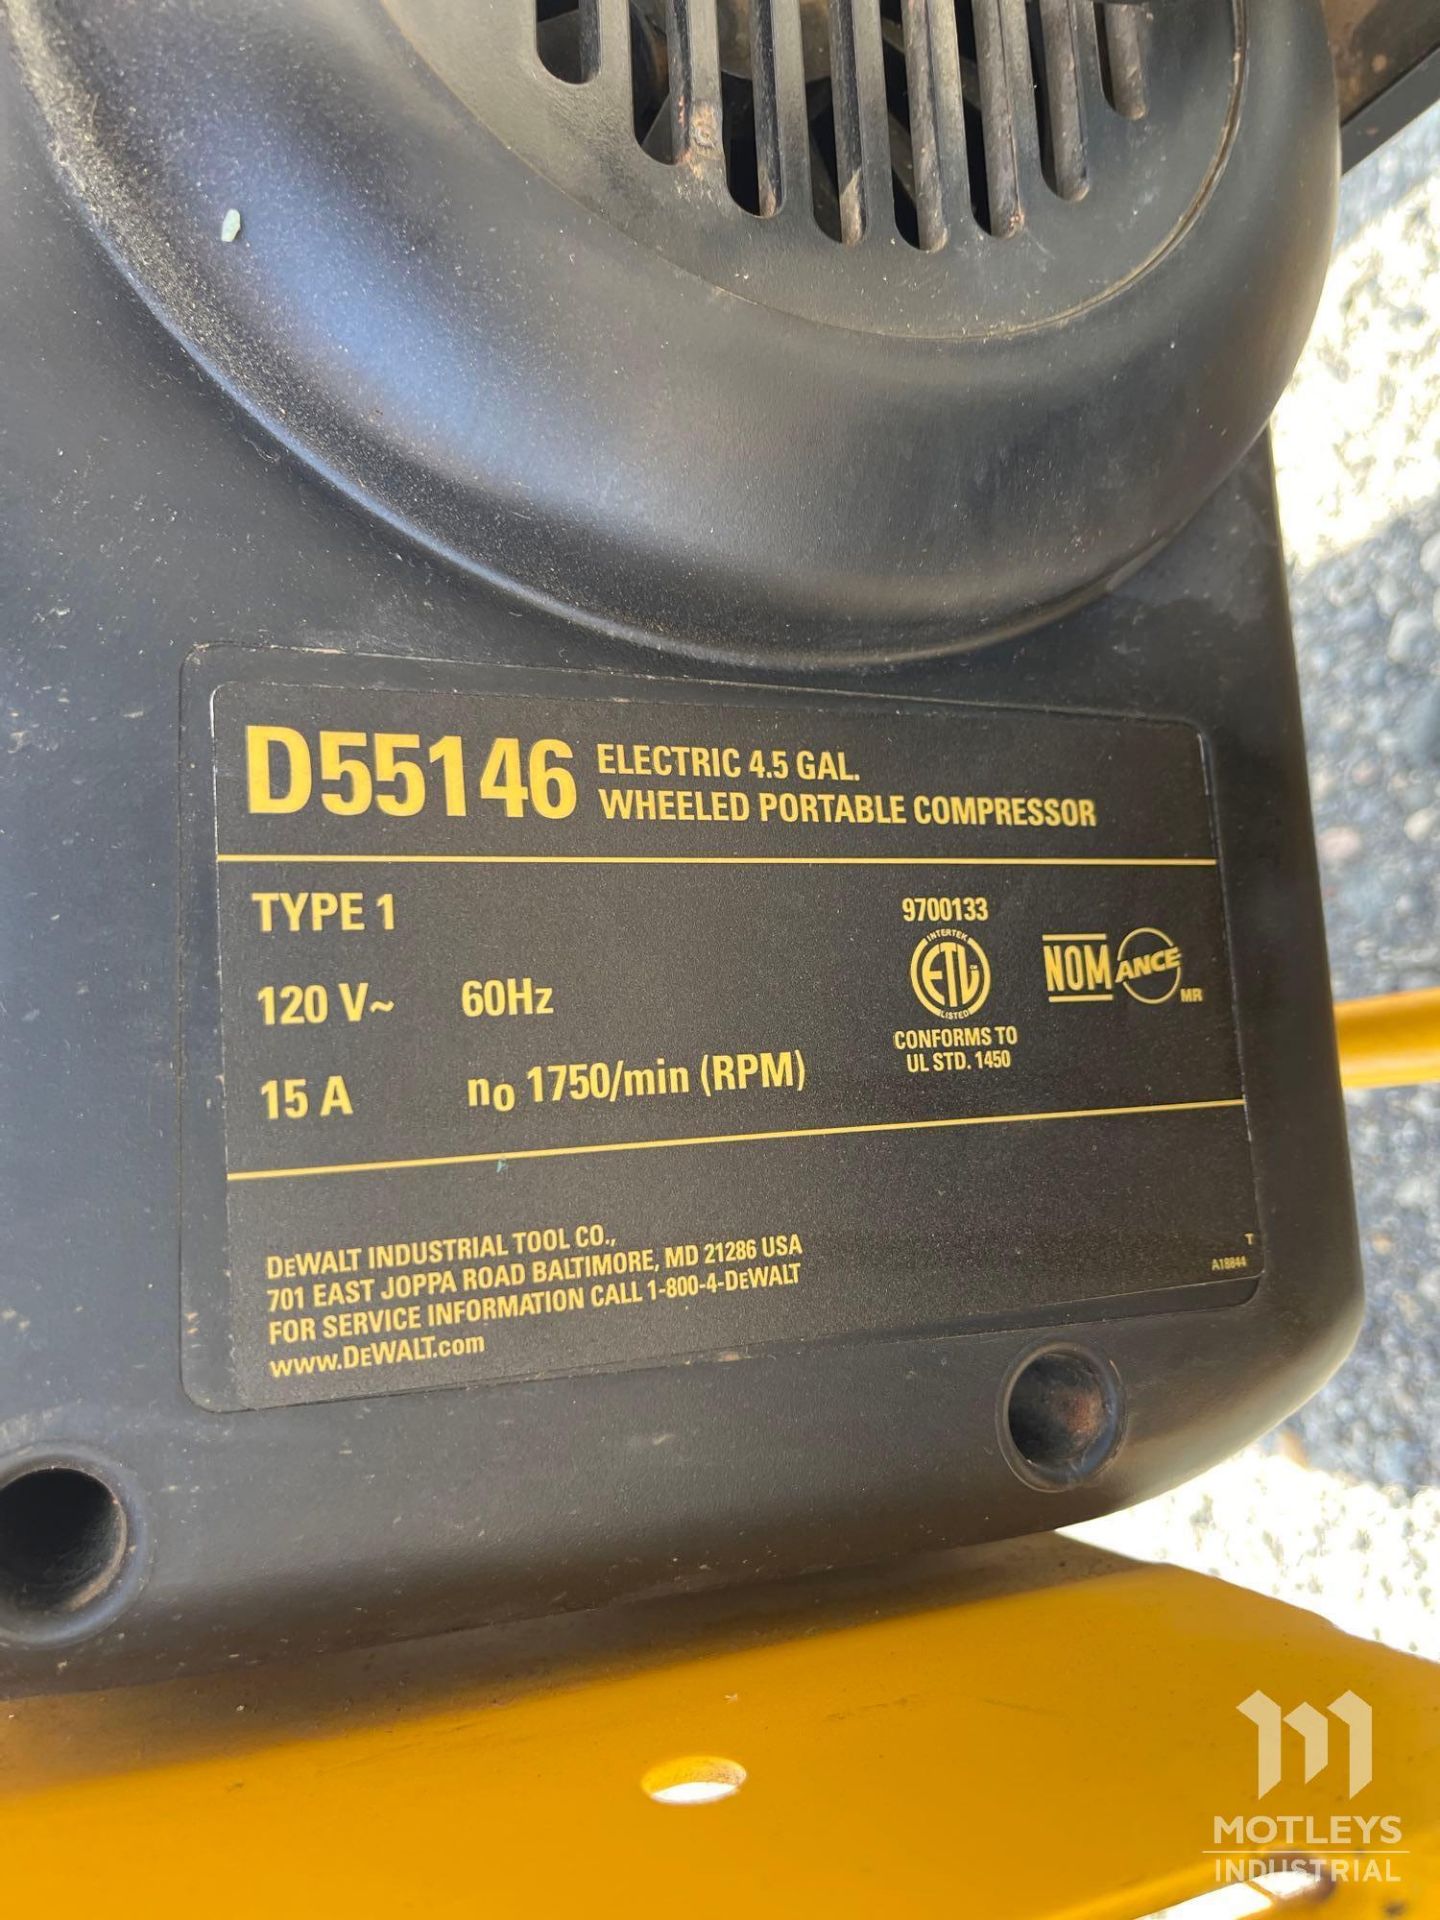 Dewalt D22146 Portable Air Compressor - Image 6 of 8